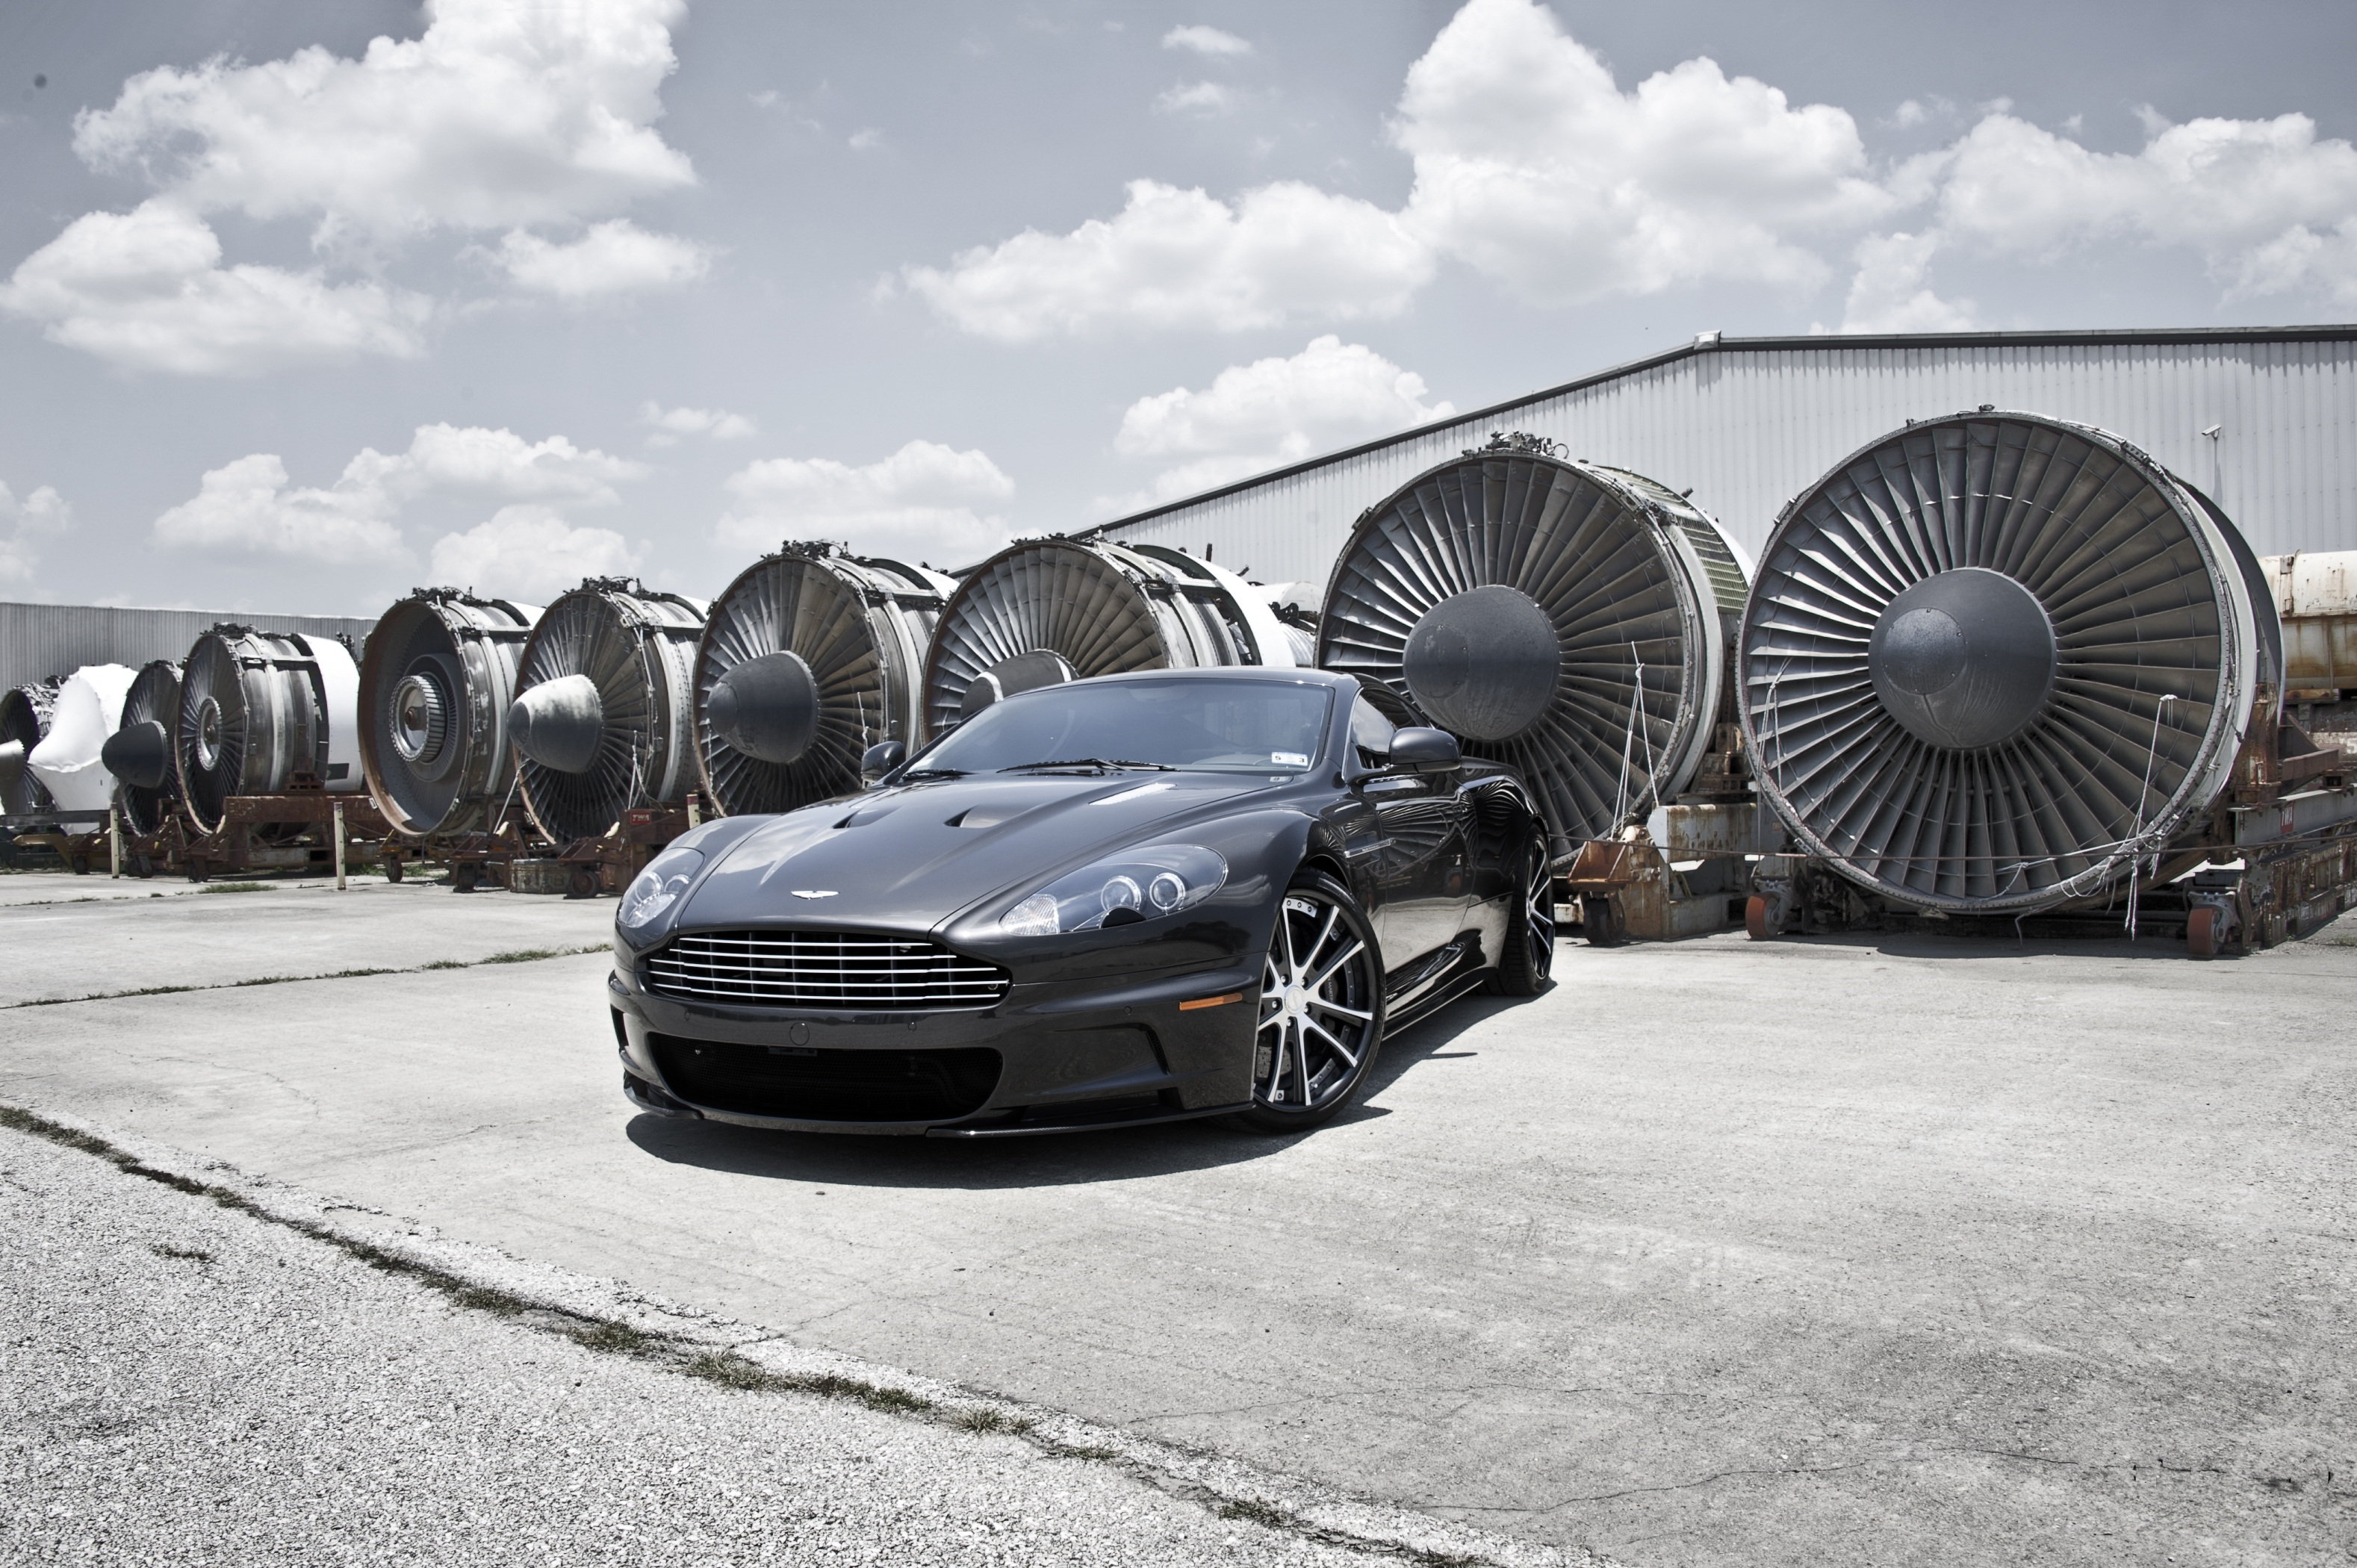 Fond d'écran Aston Martin : DBS gratuit fonds écran Aston Martin : DBS, voiture anglaise ...